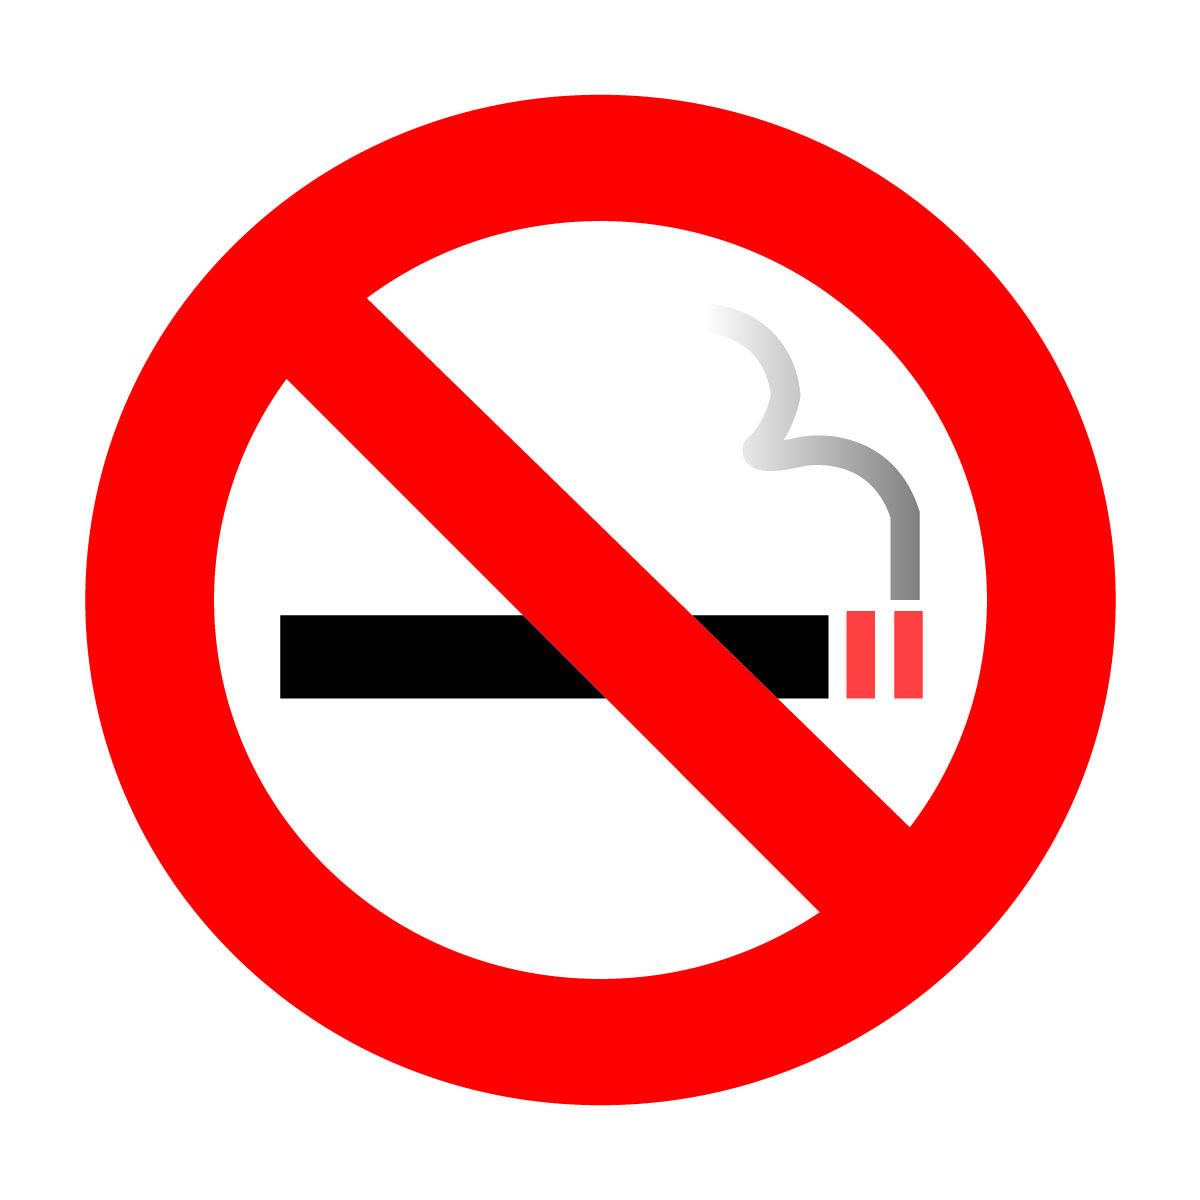 Από το Σεπτέμβρη το κάπνισμα απαγορεύεται